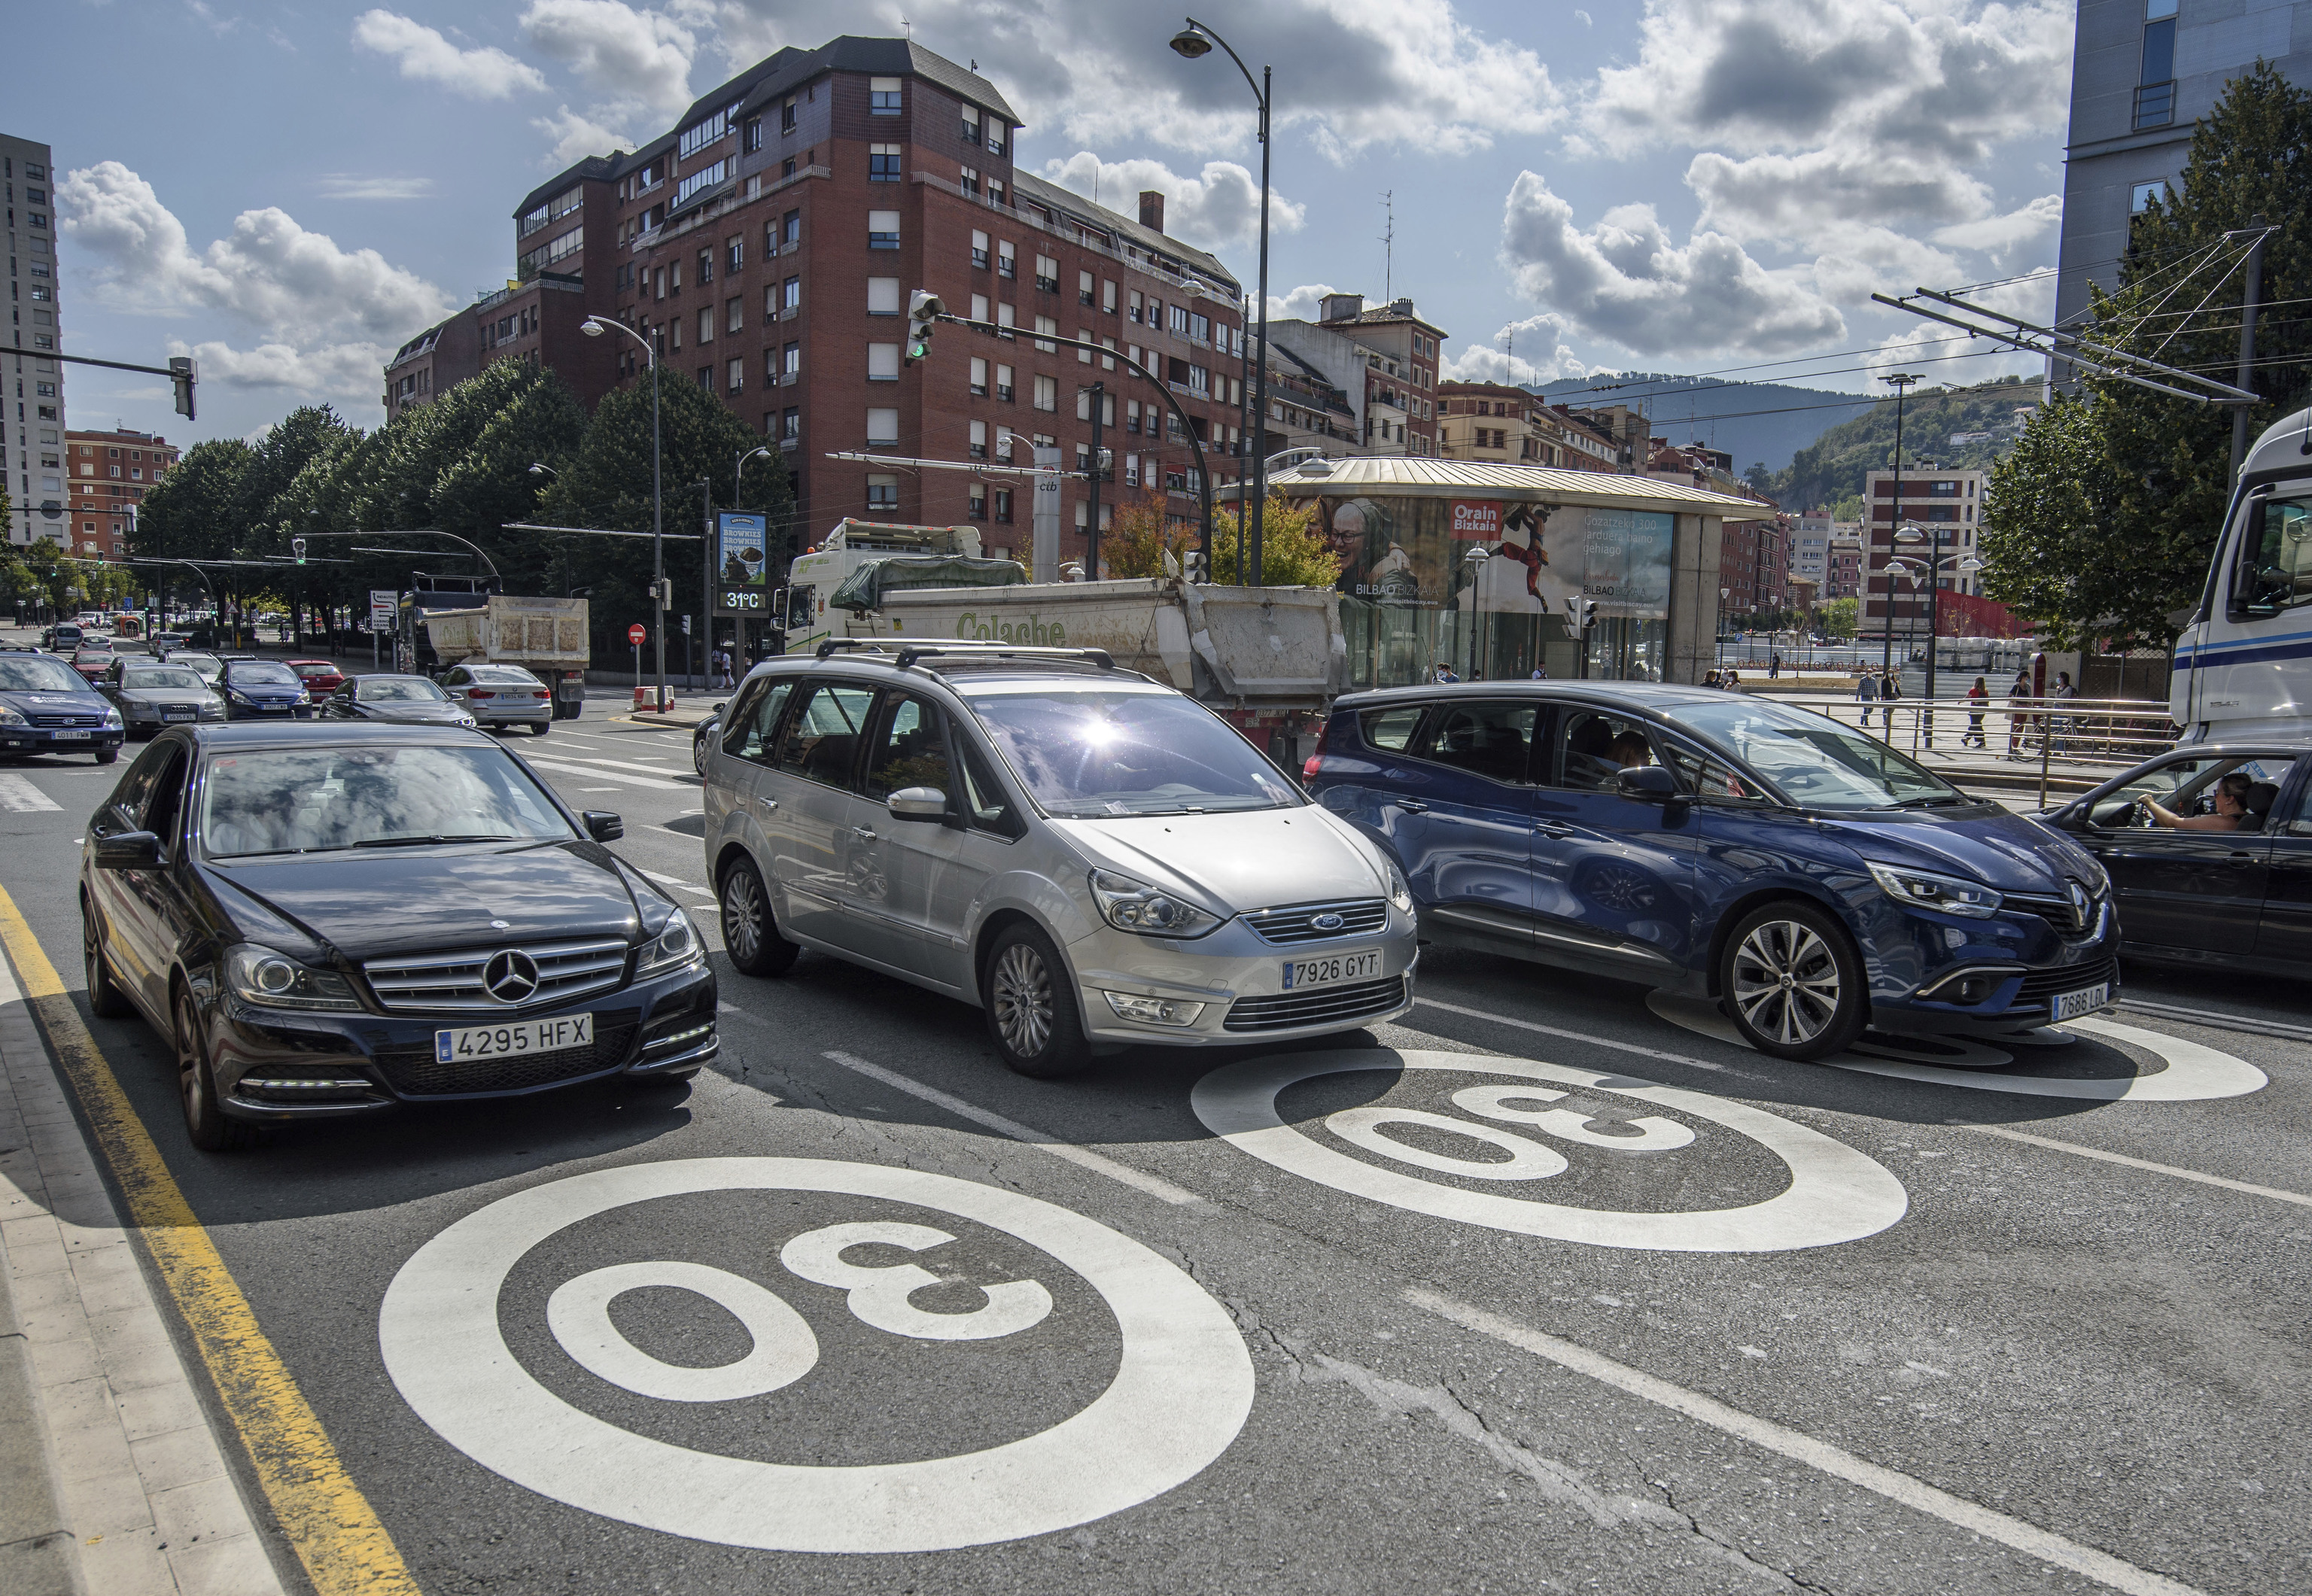 Bilbao fue la primera ciudad en limitar la velocidad a 30 km/h